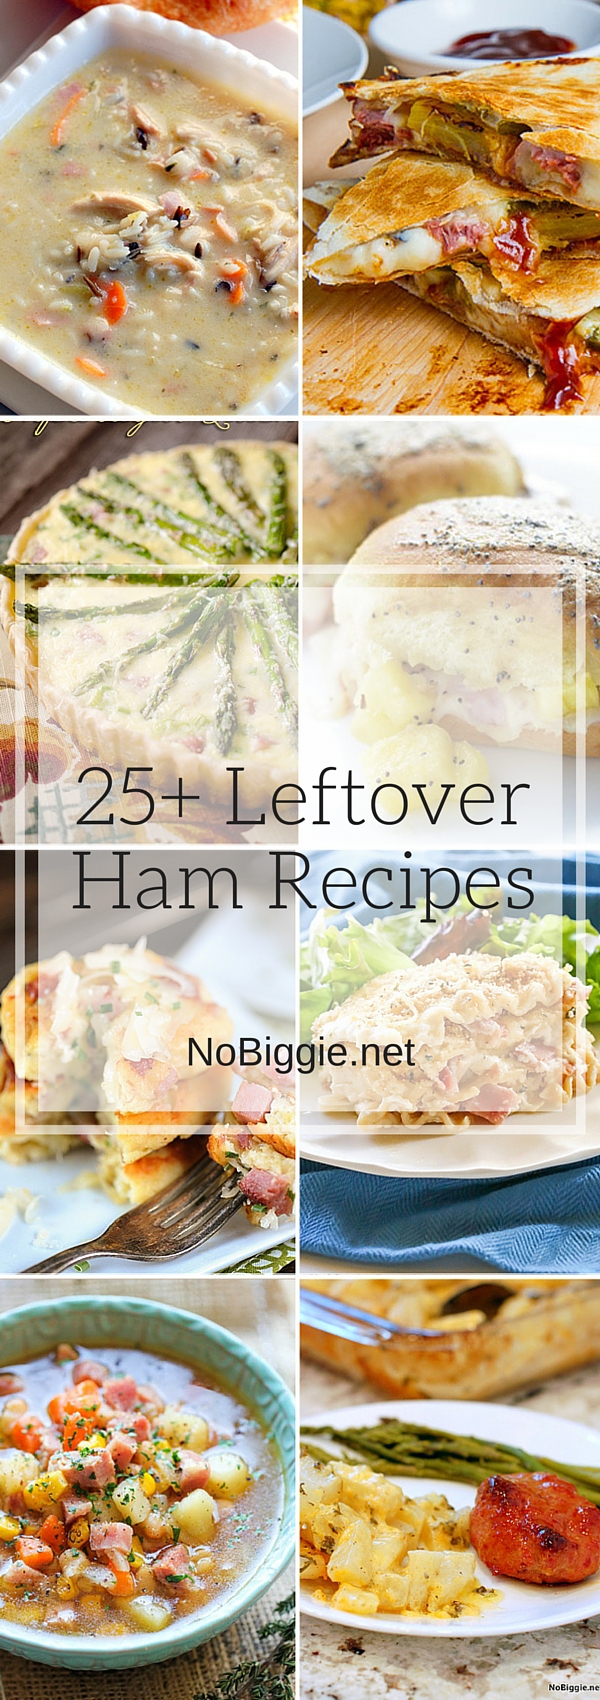 http://www.nobiggie.net/wp-content/uploads/2016/02/25-Leftover-Ham-Recipes-NoBiggie.net-vrt.jpg